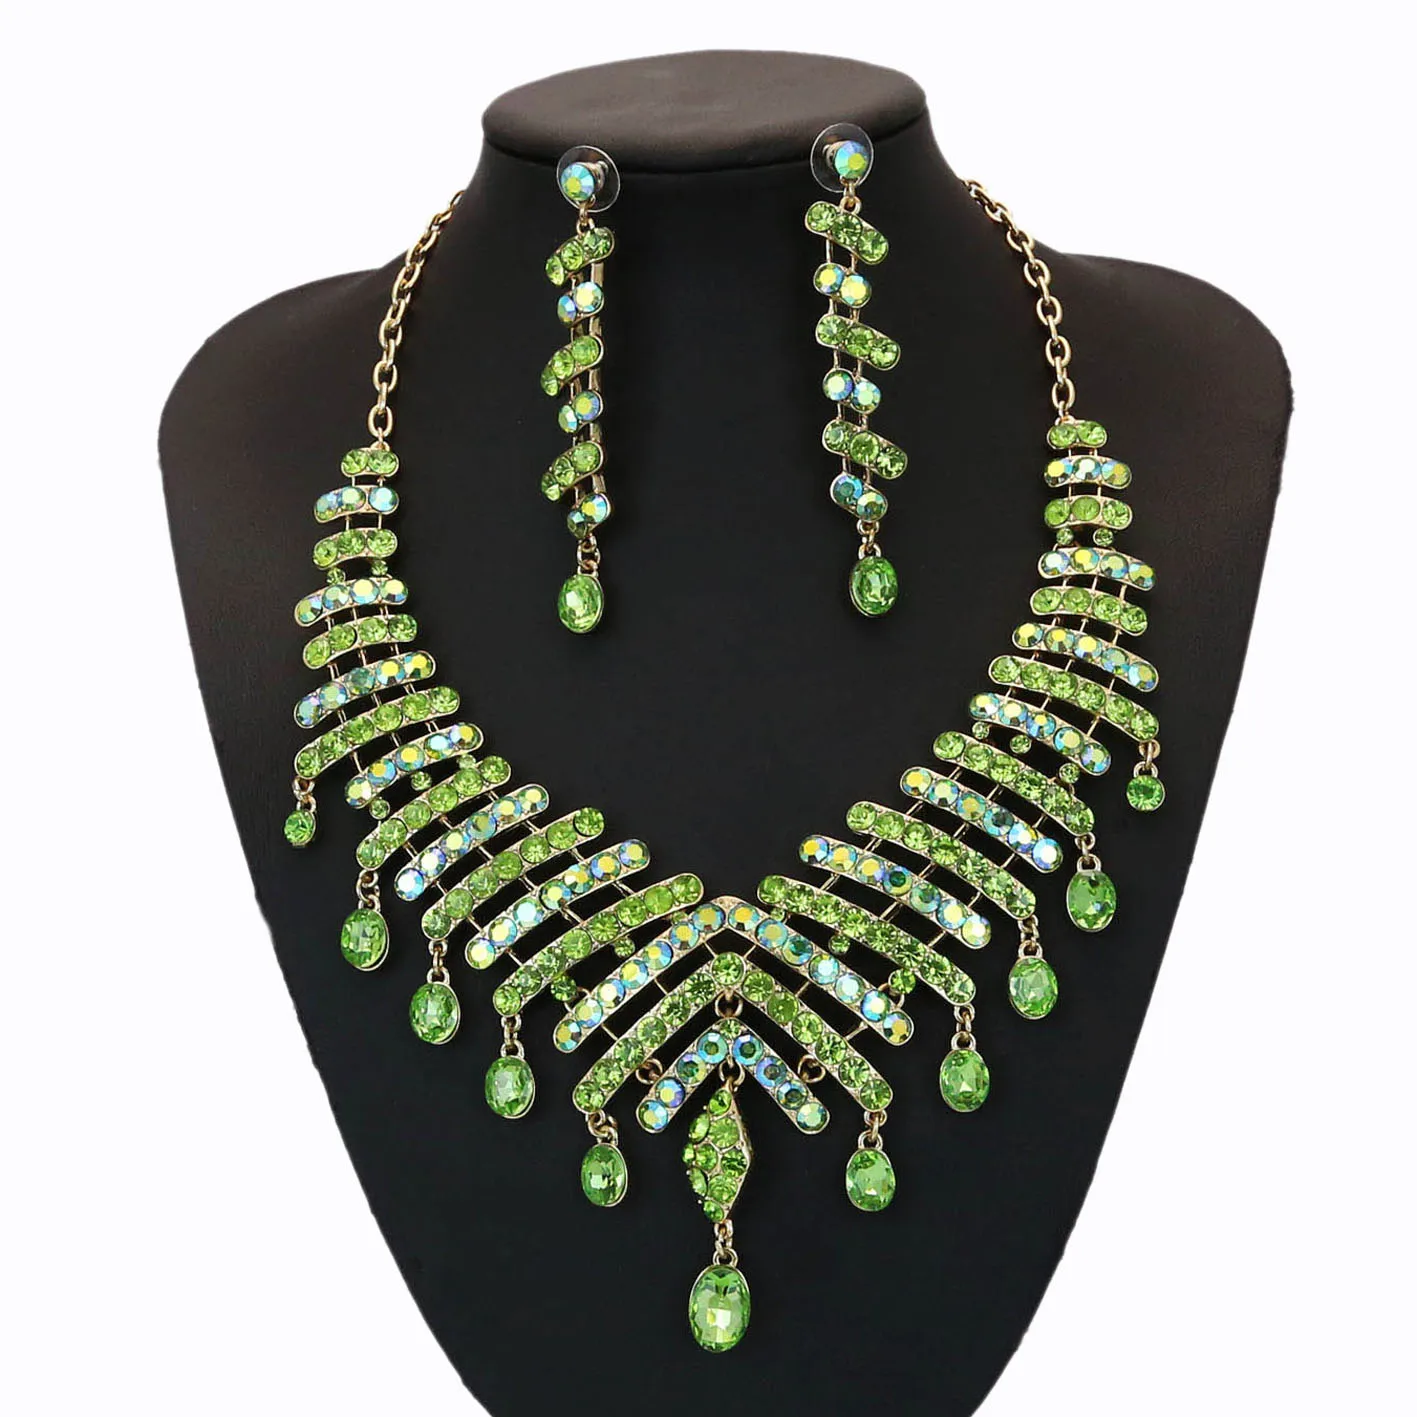  Yulaili оптовая продажа Горячая дизайны зеленый кристалл ожерелье браслет серьги кольцо для свадебной вечеринки повседневной жизни Jewllery наборы